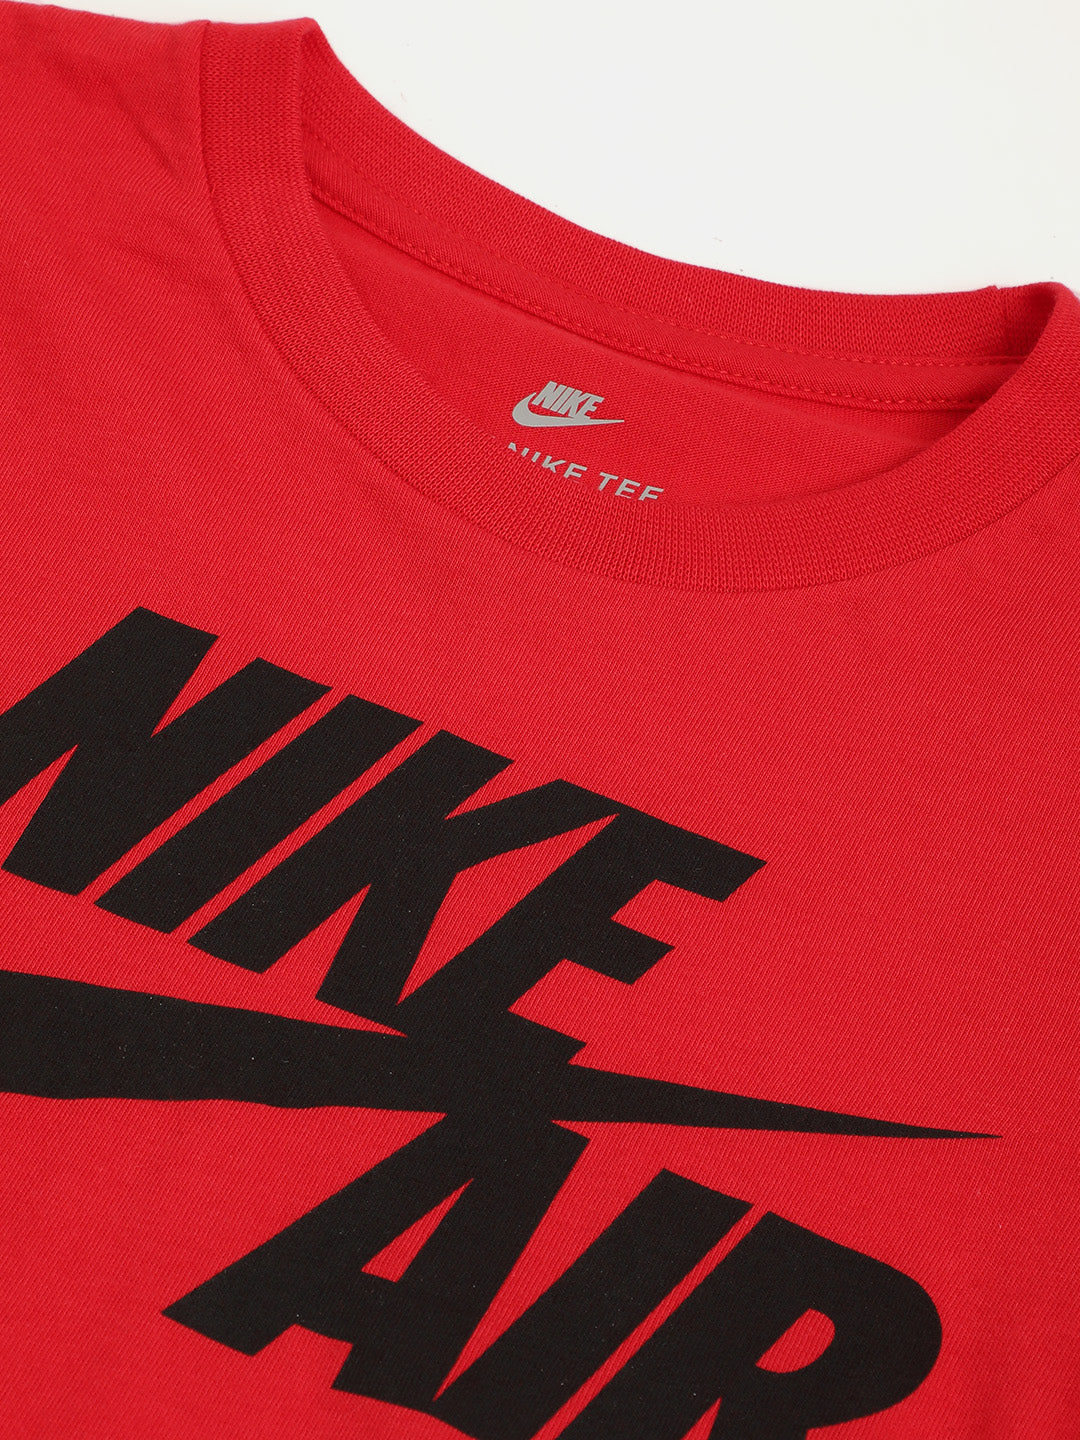 Nike Split Futura Logo T-Shirt T Shirt Nike   